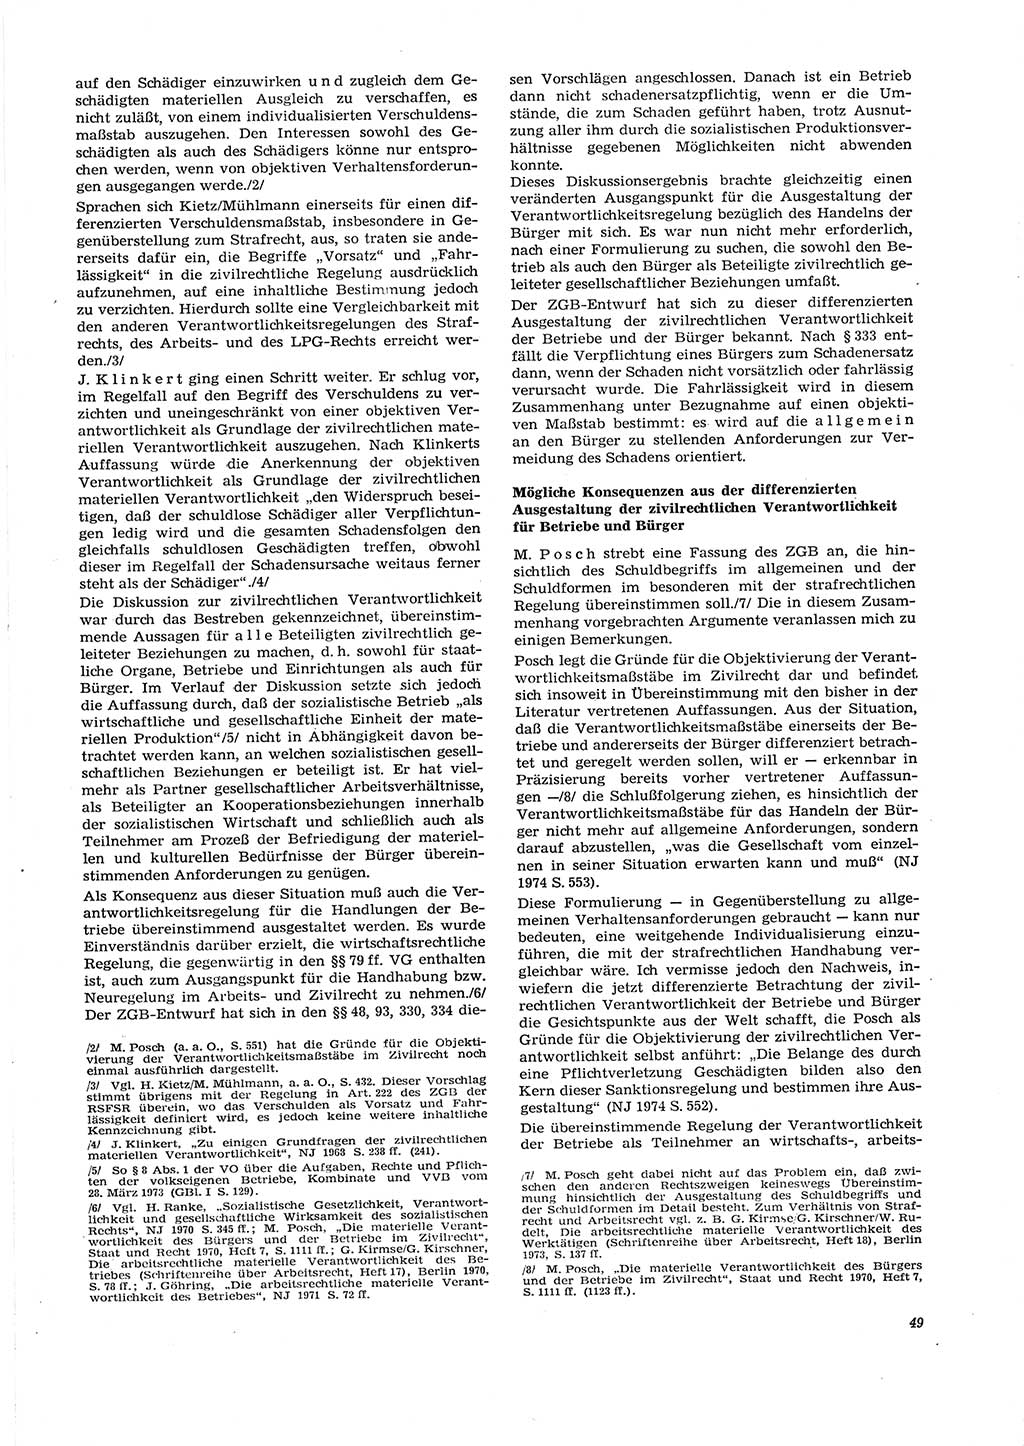 Neue Justiz (NJ), Zeitschrift für Recht und Rechtswissenschaft [Deutsche Demokratische Republik (DDR)], 29. Jahrgang 1975, Seite 49 (NJ DDR 1975, S. 49)